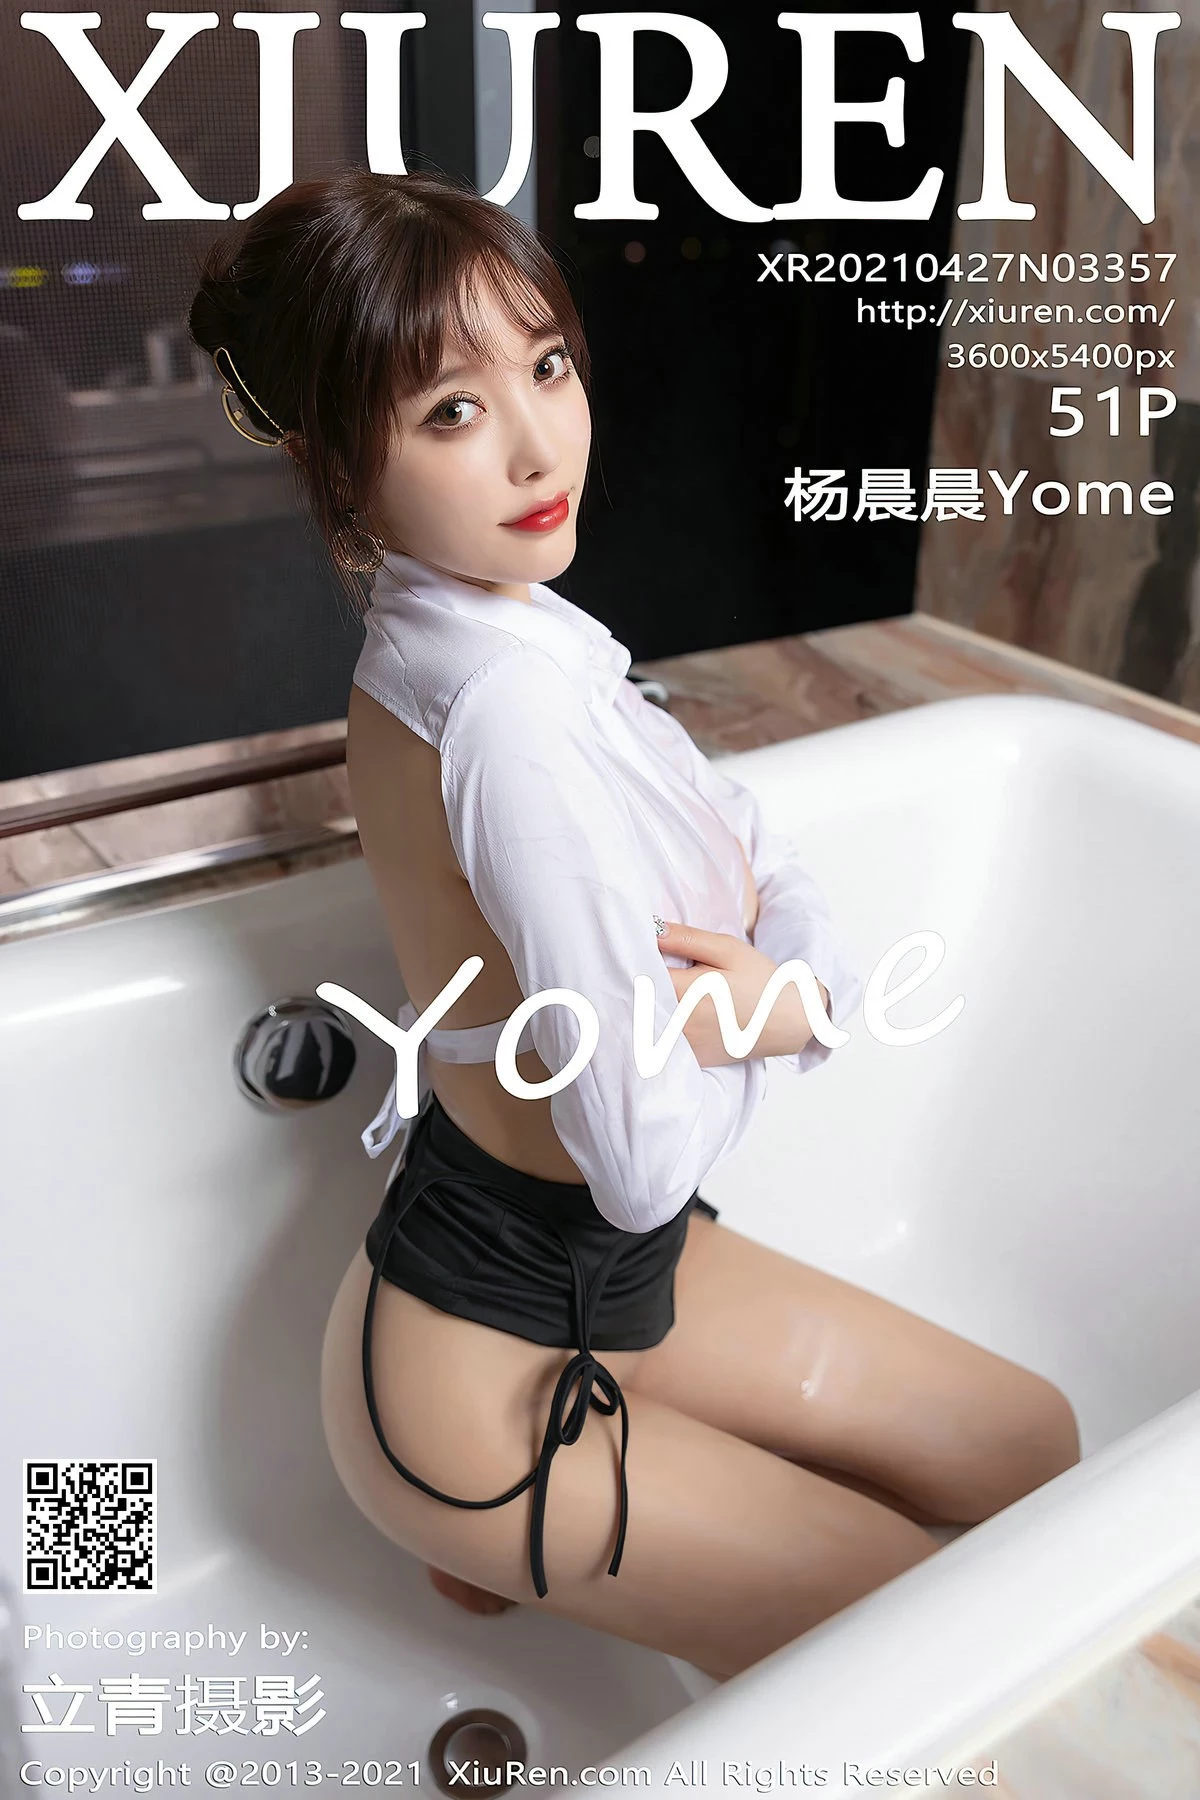 No3357 楊晨晨Yome-1